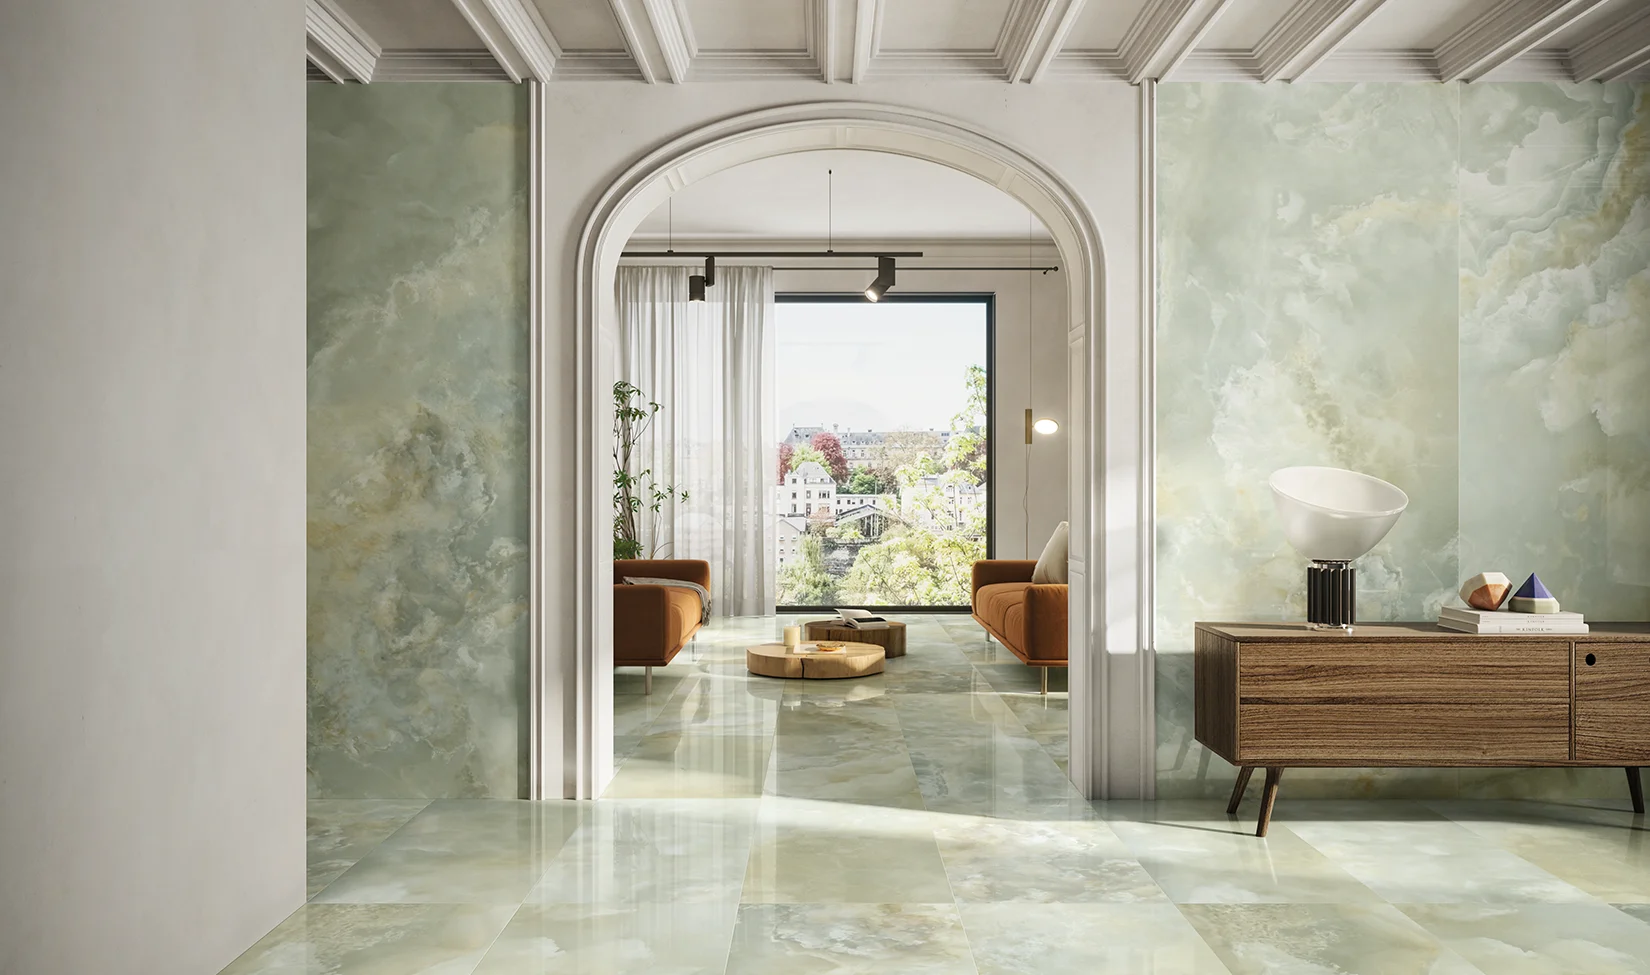 Interno lussuoso con effetto marmo onice multicolor, grandi lastre decorative su pareti e piastrelle rettangolari sul pavimento, arredamento moderno.